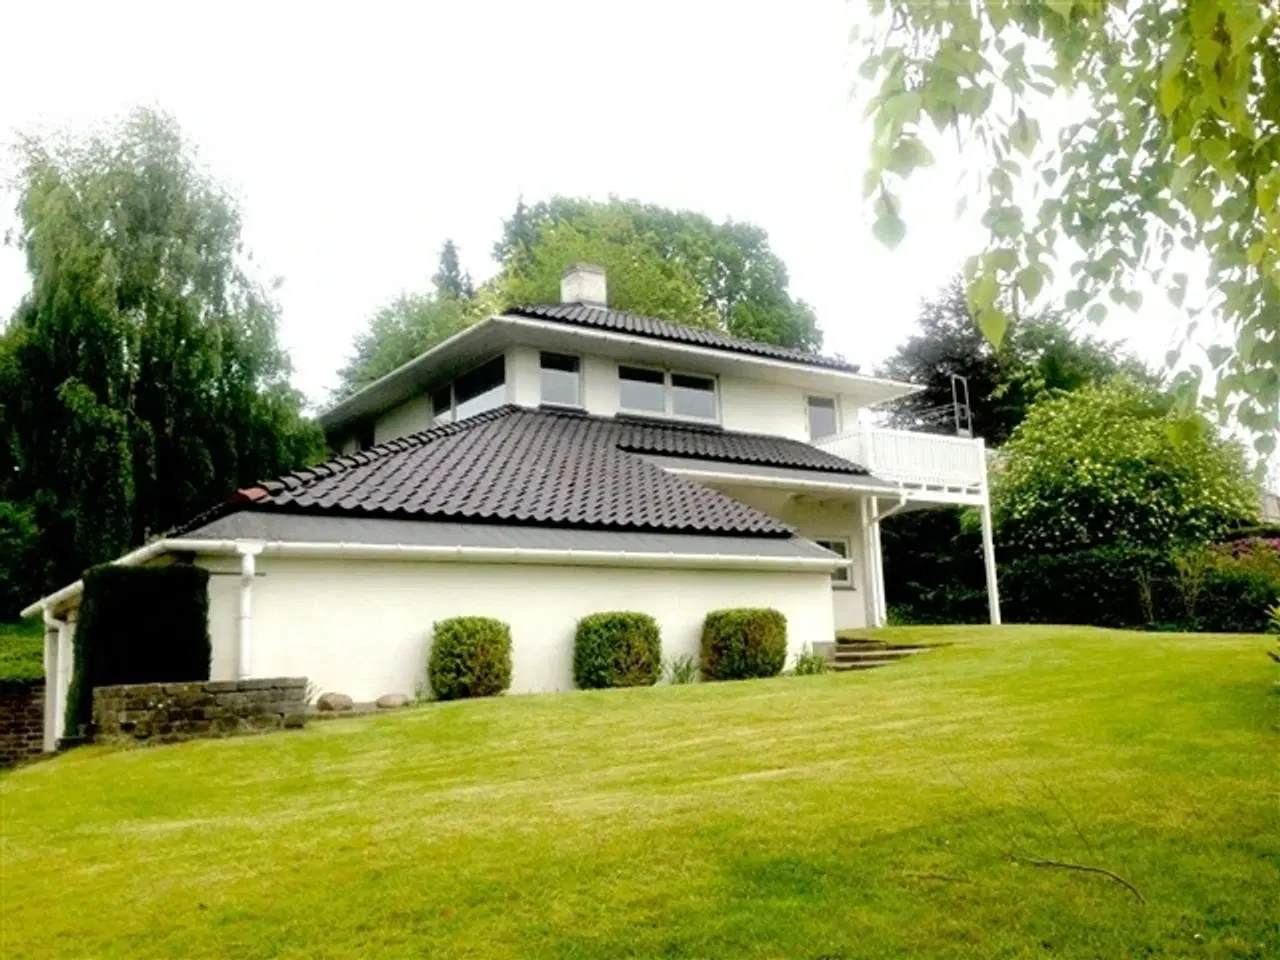 Billede 1 - Nyrenoveret moderne villa forenden af blind vej Charlottenlun, nyrenoveret